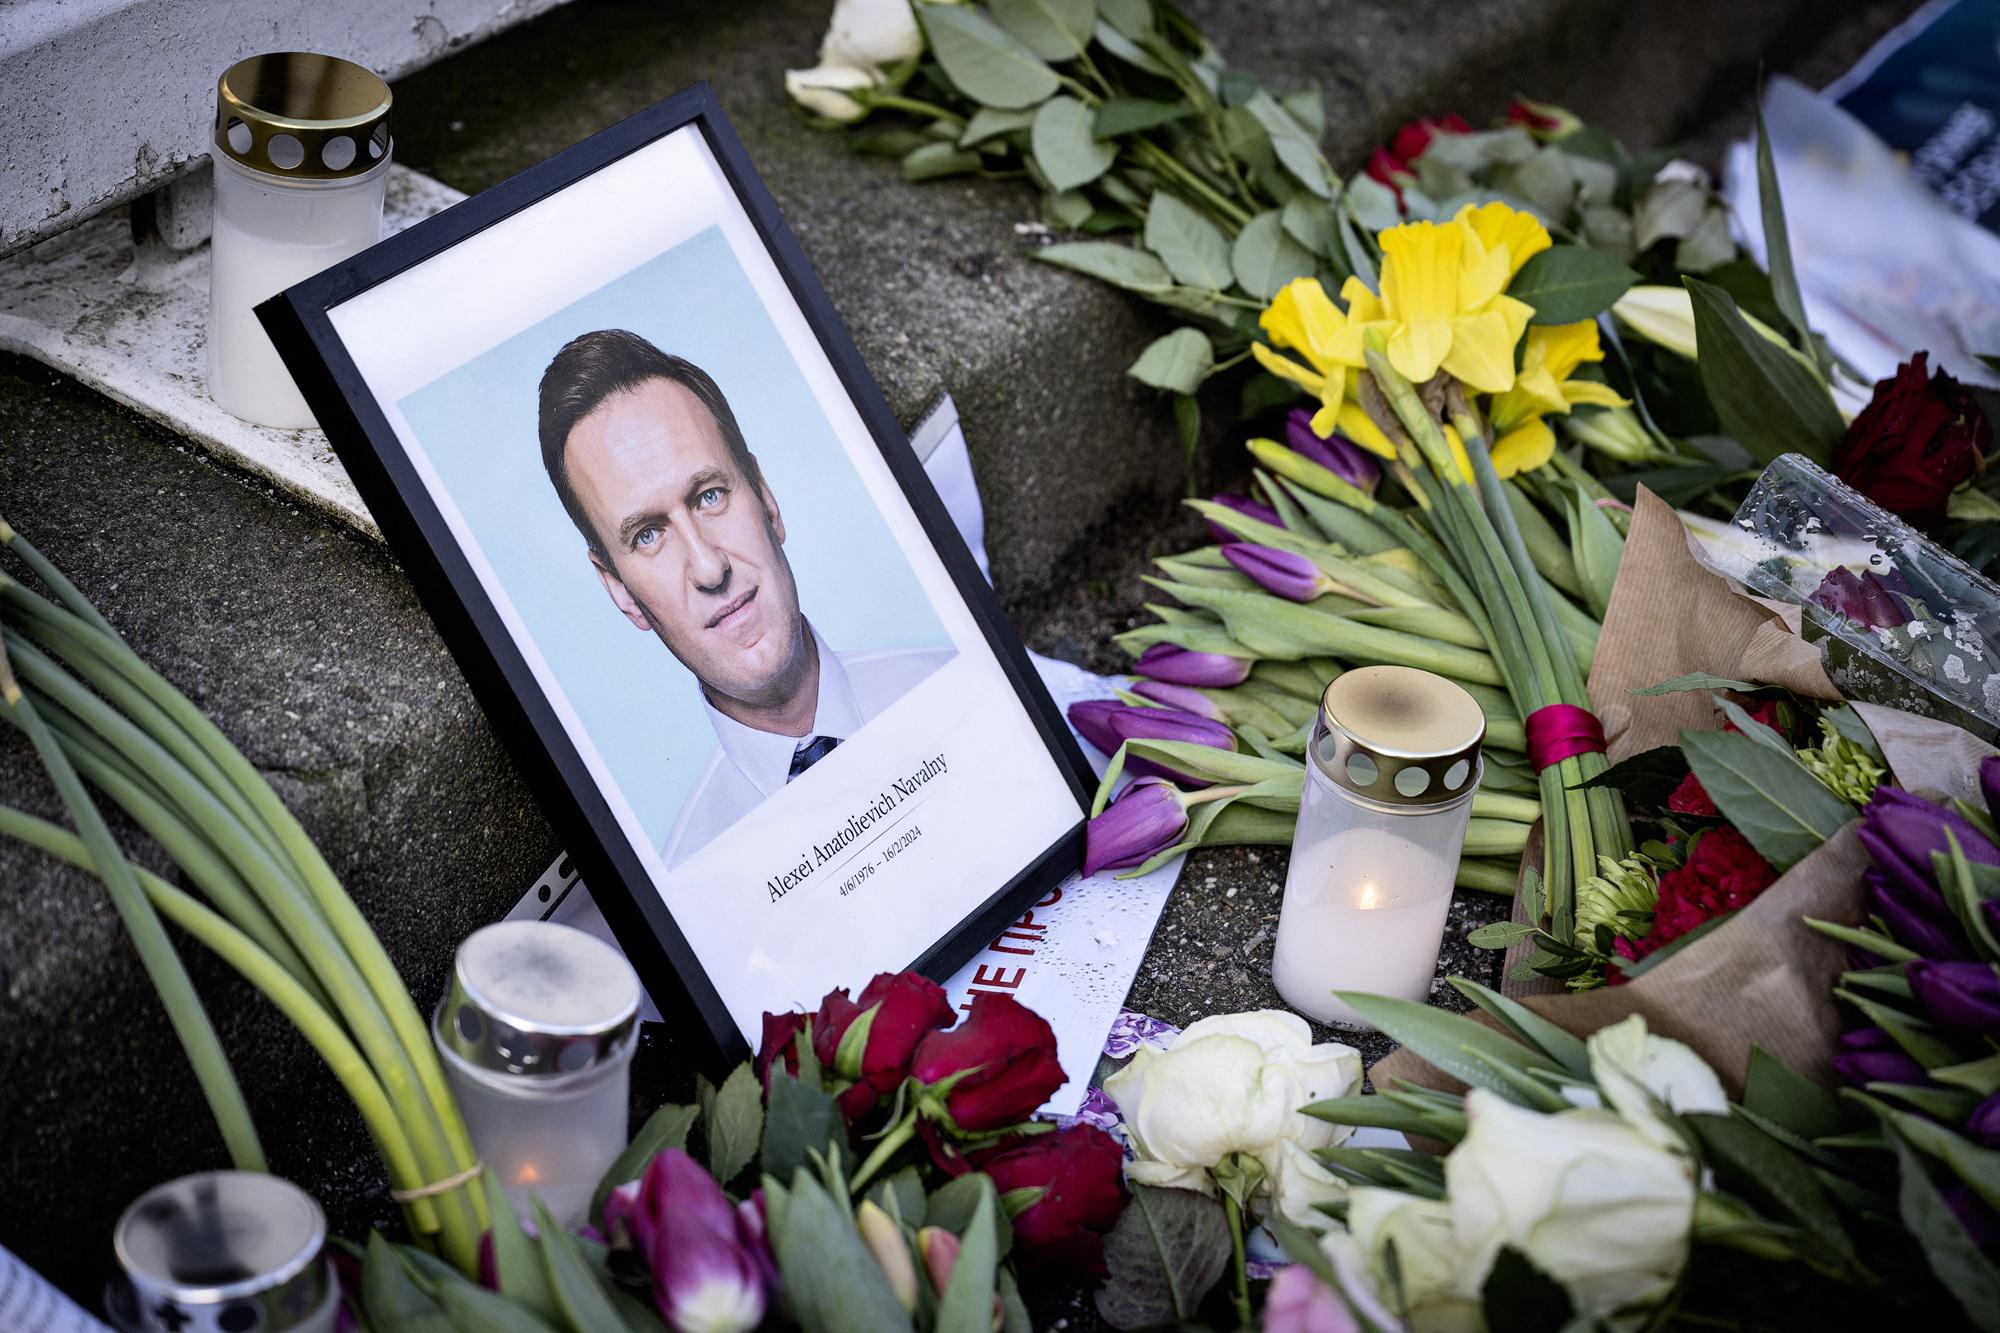 Где и когда похоронят Навального*, и почему возникли сложности с выдачей тела родственникам. Новые неудобные факты